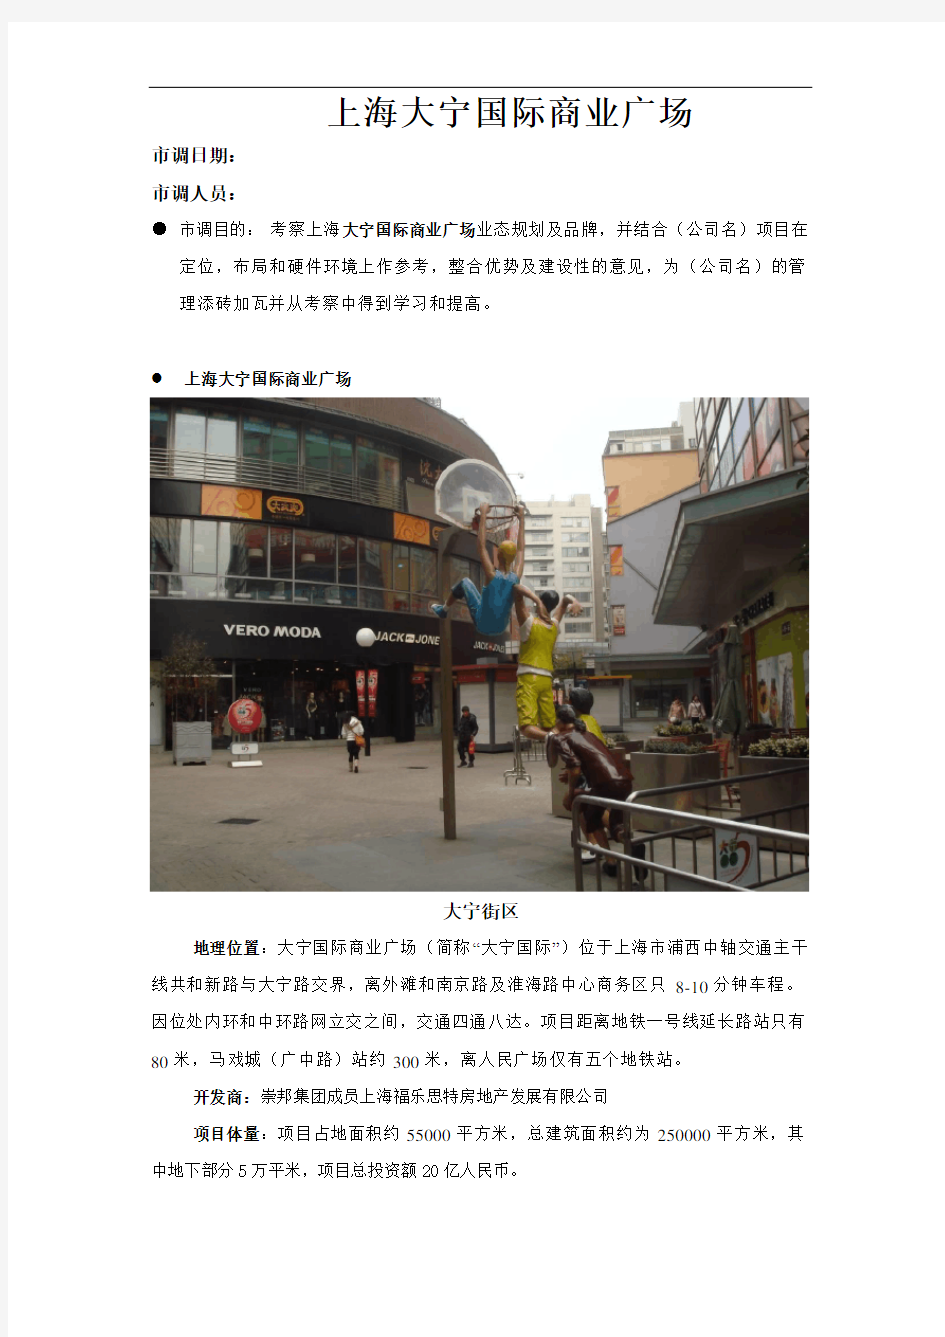 招商市调报告上海大宁国际商业广场